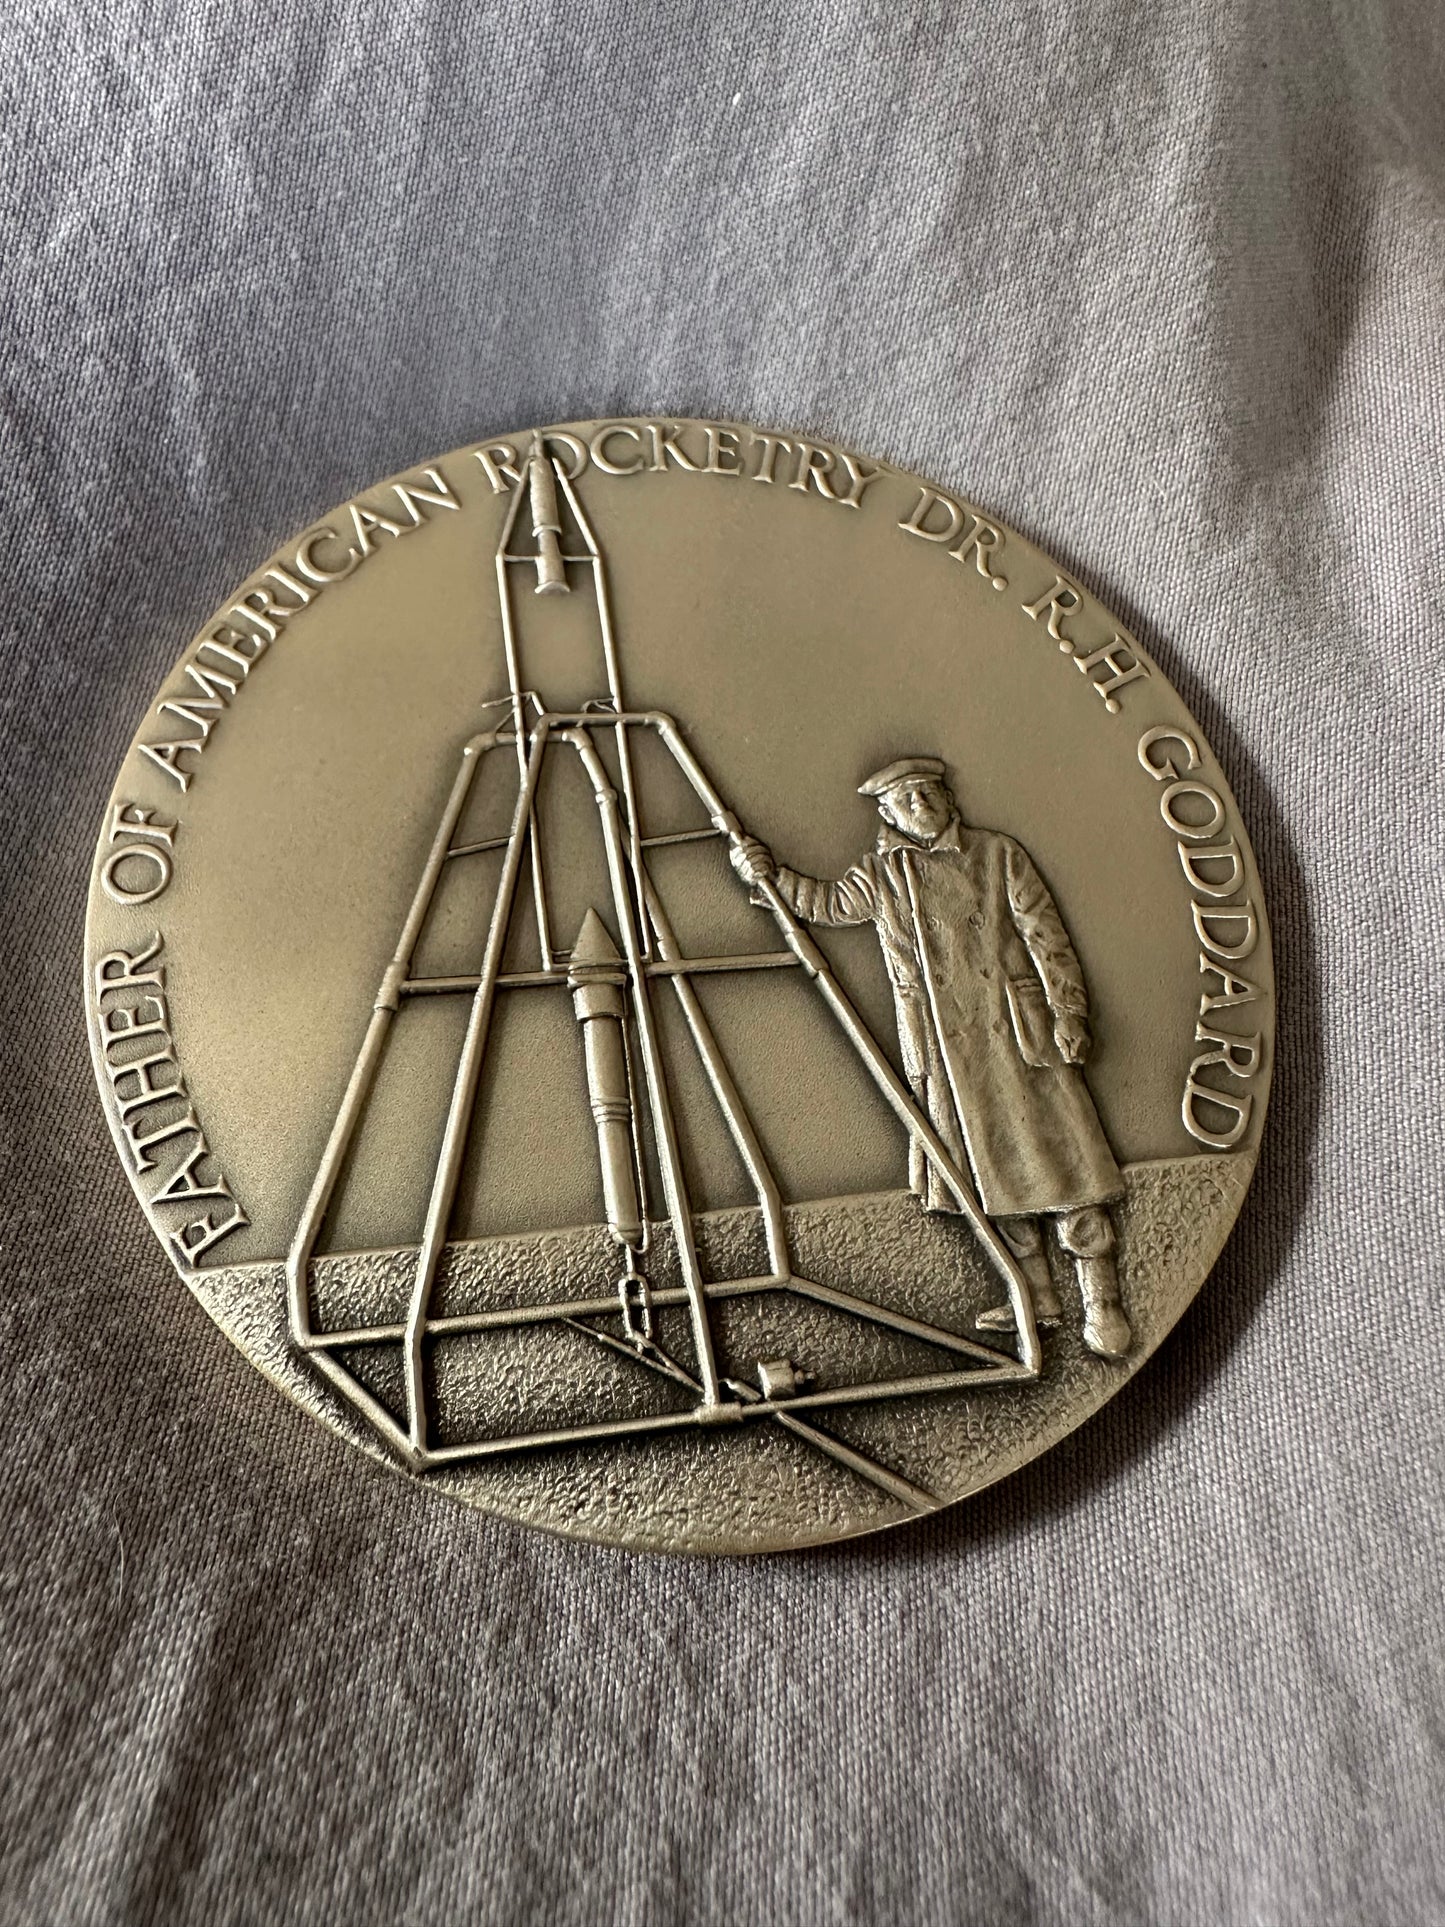 Apollo 11 NASA Goddard Medal .999 Silver Medallic Art Co About 5oz HighRelief